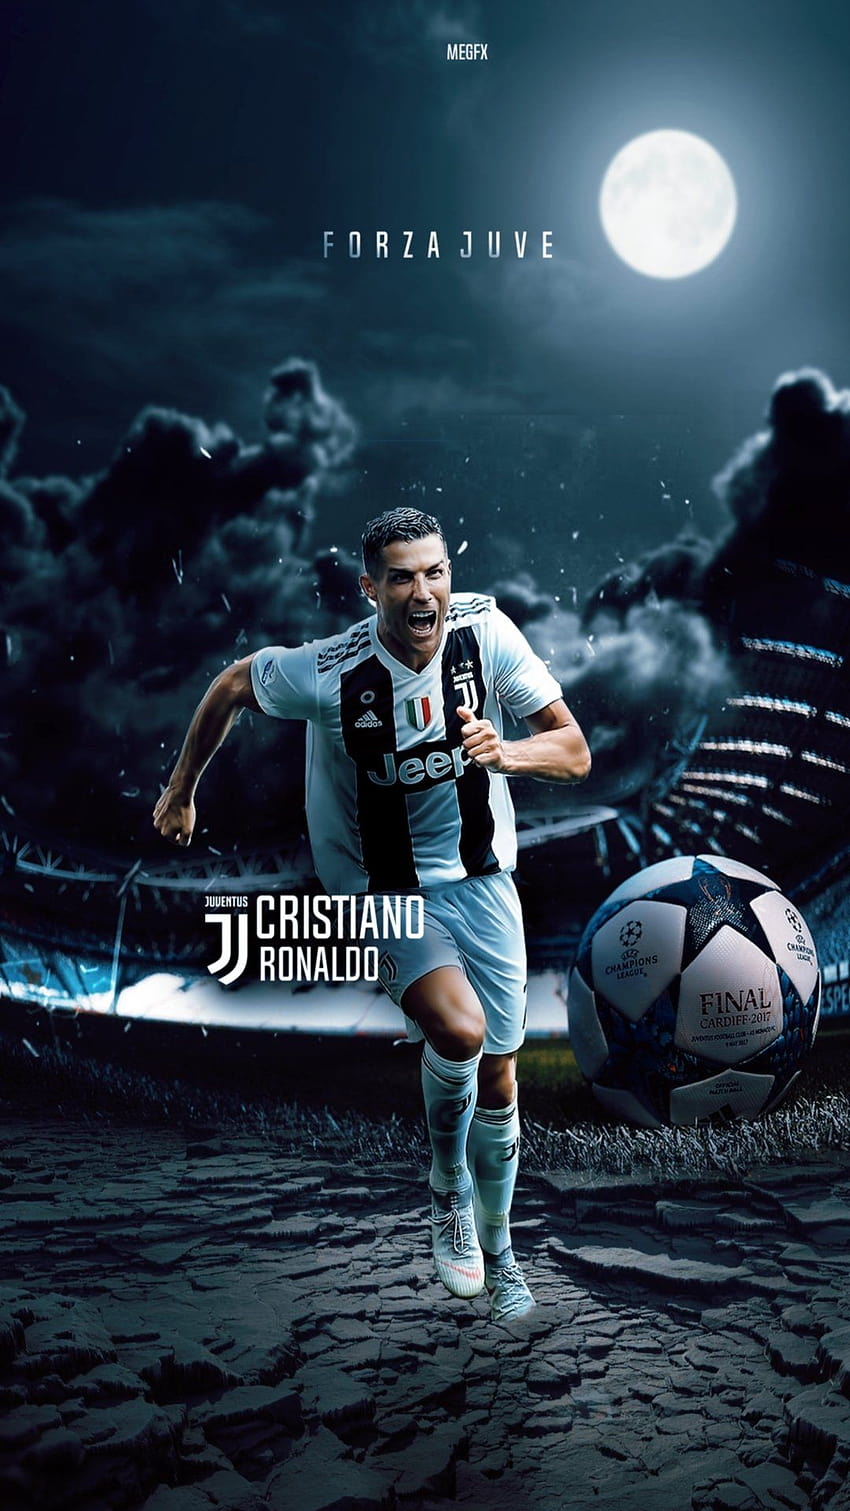 Ngắm nhìn hình nền HD về Cristiano Ronaldo thi đấu tại Champions League trên chiếc điện thoại của bạn để cảm nhận thêm sự đỉnh cao và tài năng của anh chàng này. Hãy tải về và chia sẻ ngay!